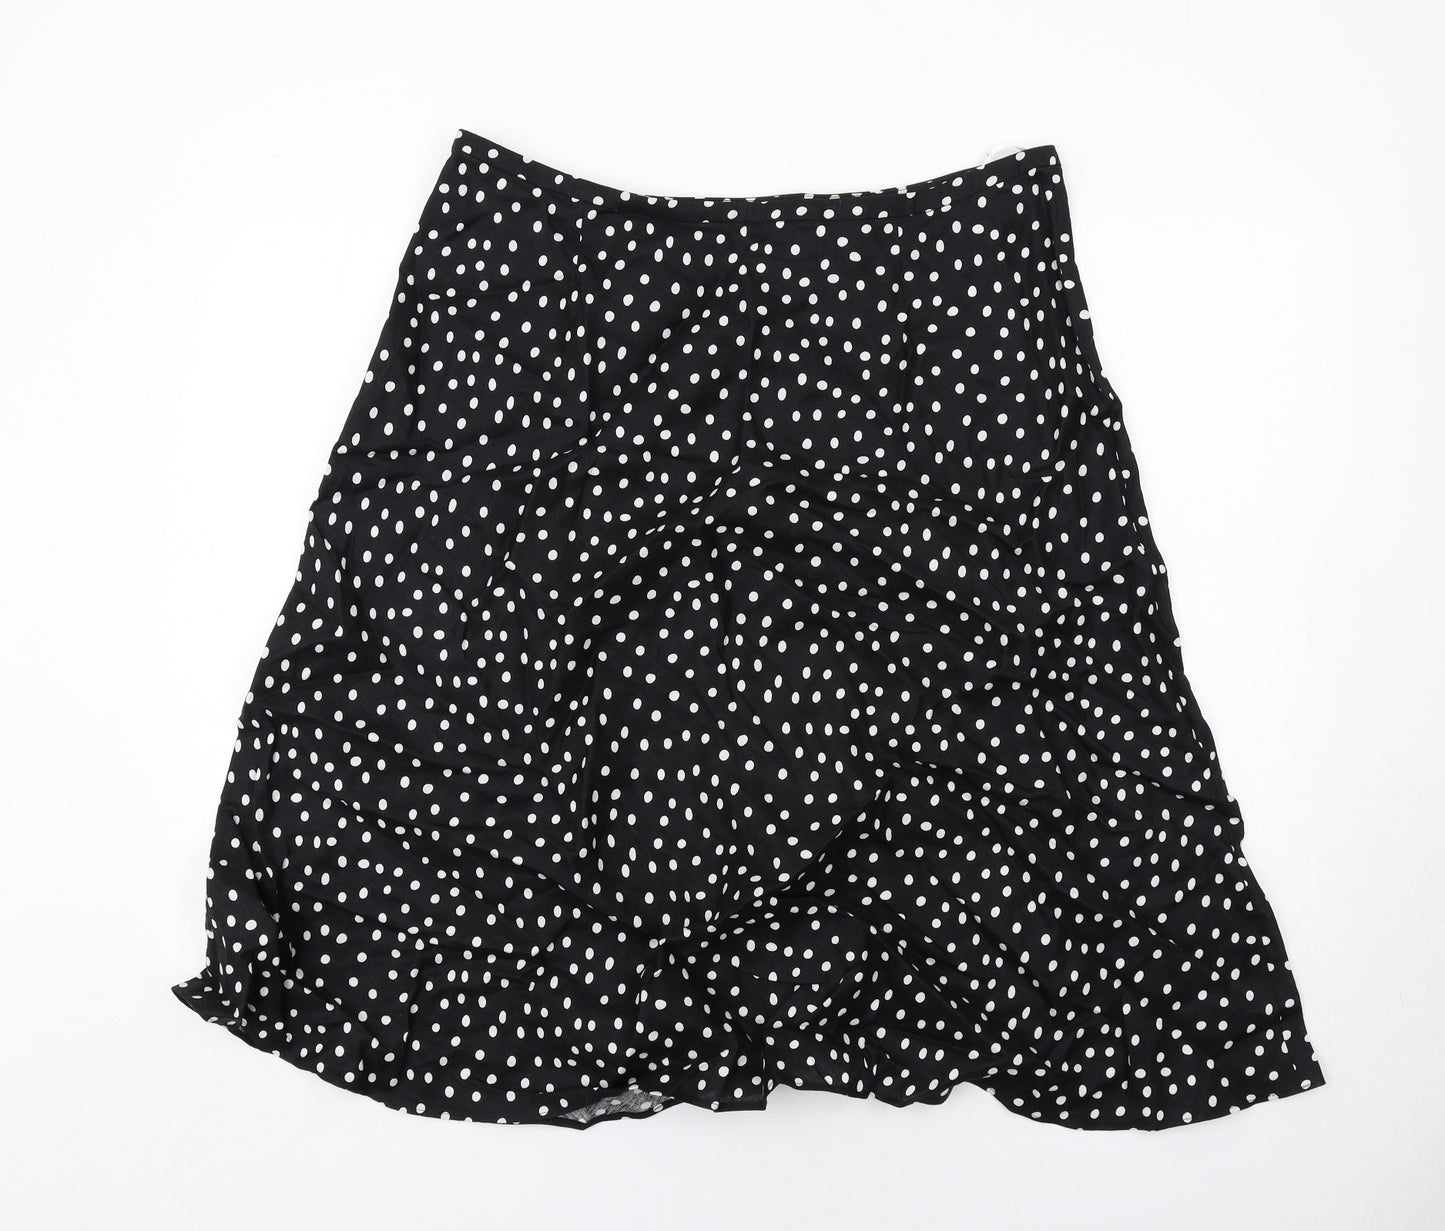 EAST Womens Black Polka Dot Linen Swing Skirt Size 16 Zip